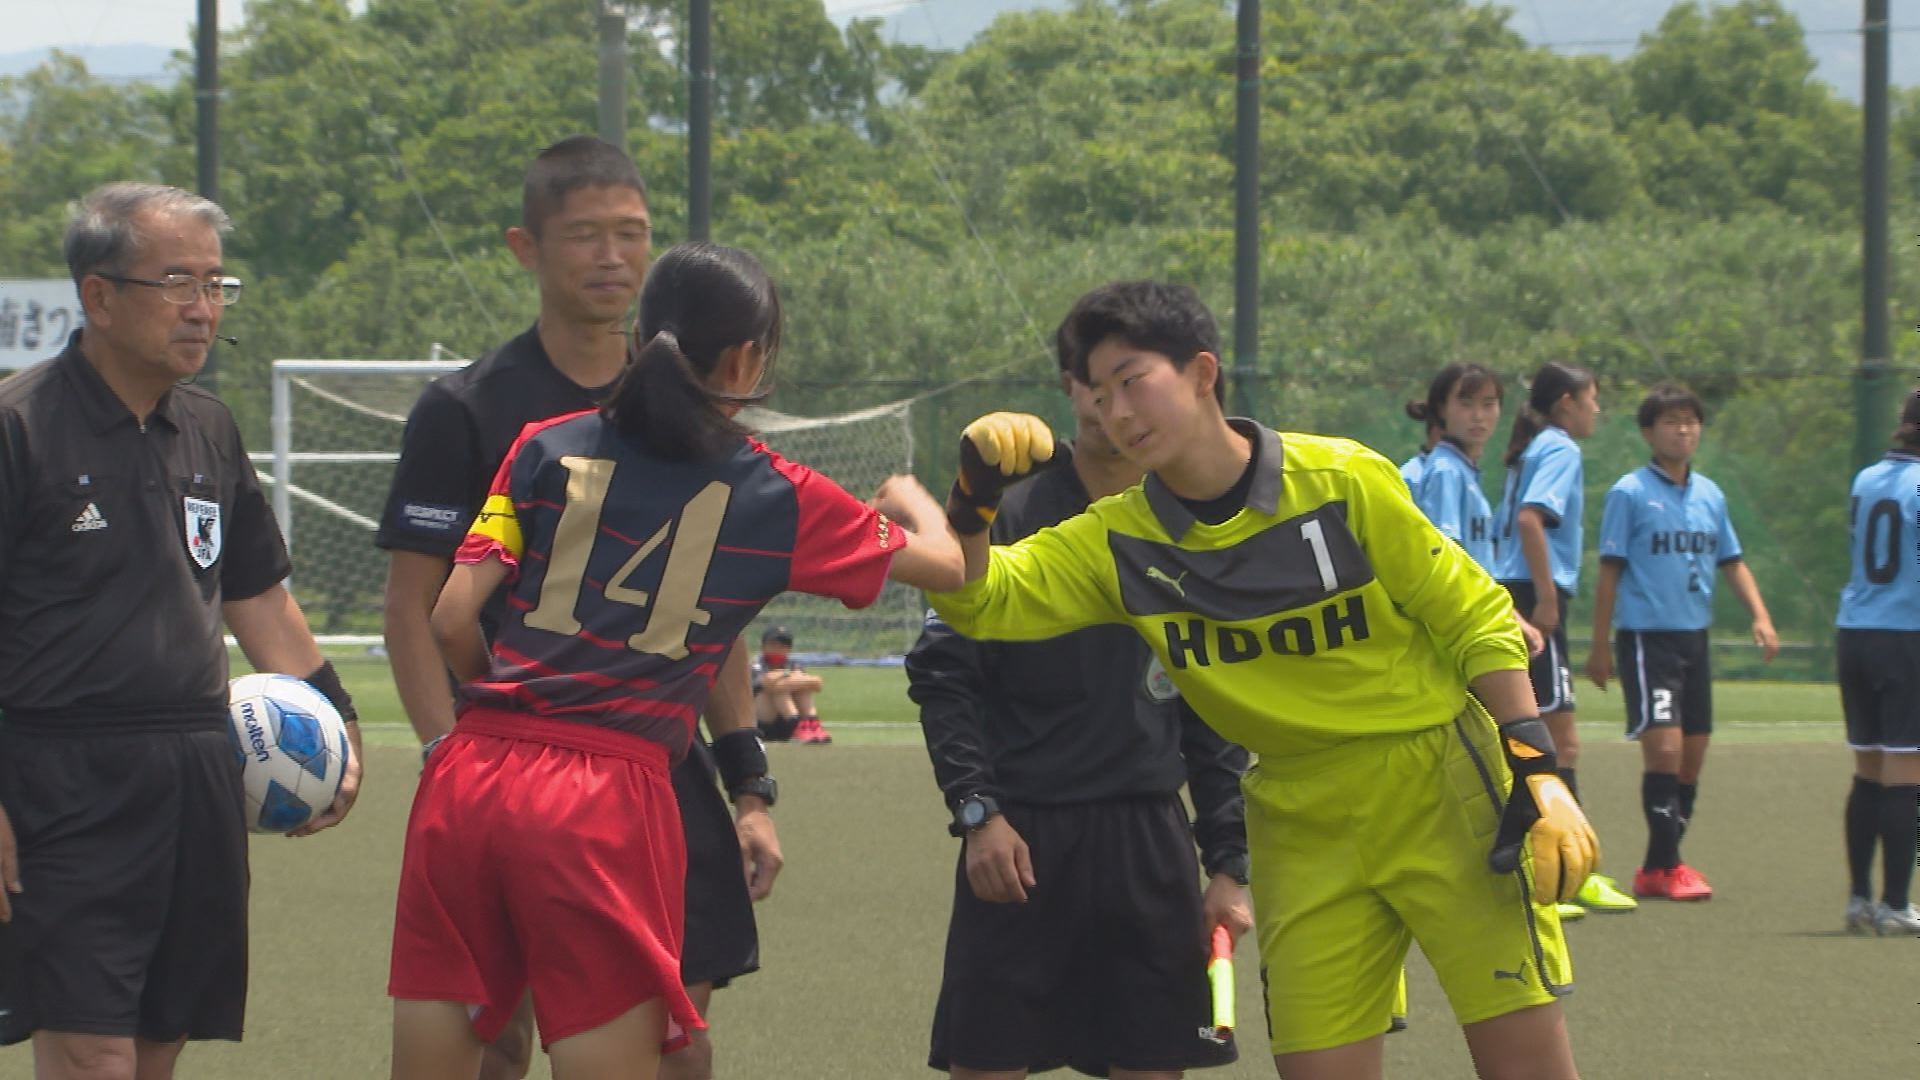 神村学園が九州大会へ 県高校総体女子サッカー Mbcスポーツニュース